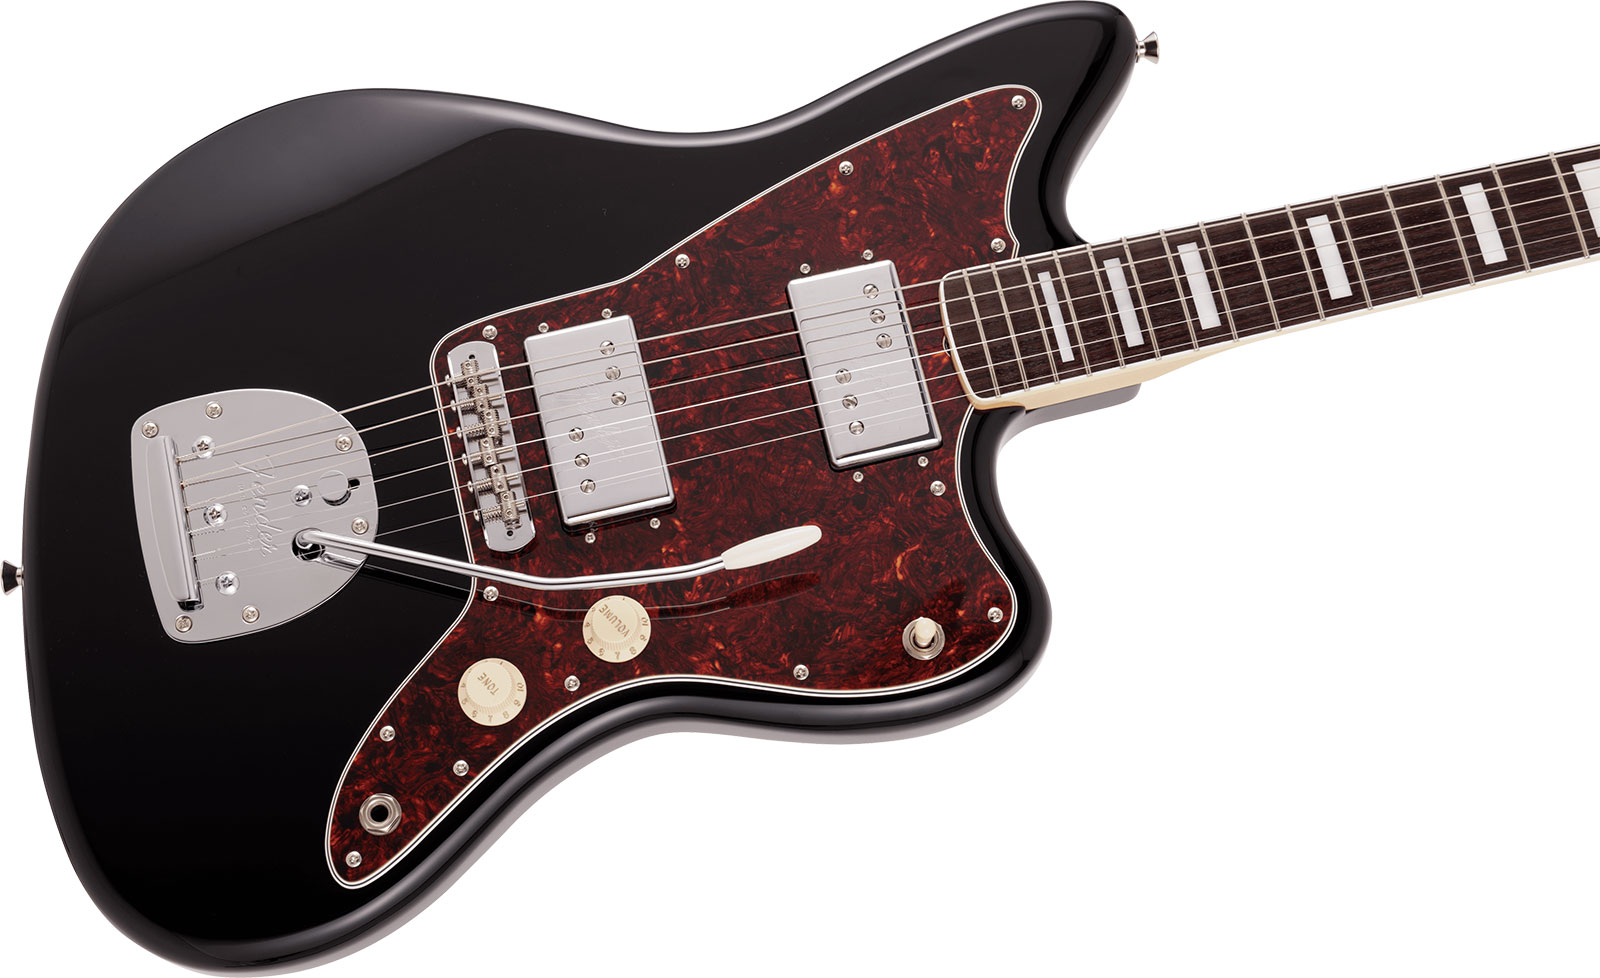 Fender Jazzmaster 60s Hh Wide Range Cunife Mij Traditional Jap 2h Trem Rw - Black - Guitarra eléctrica de doble corte. - Variation 2